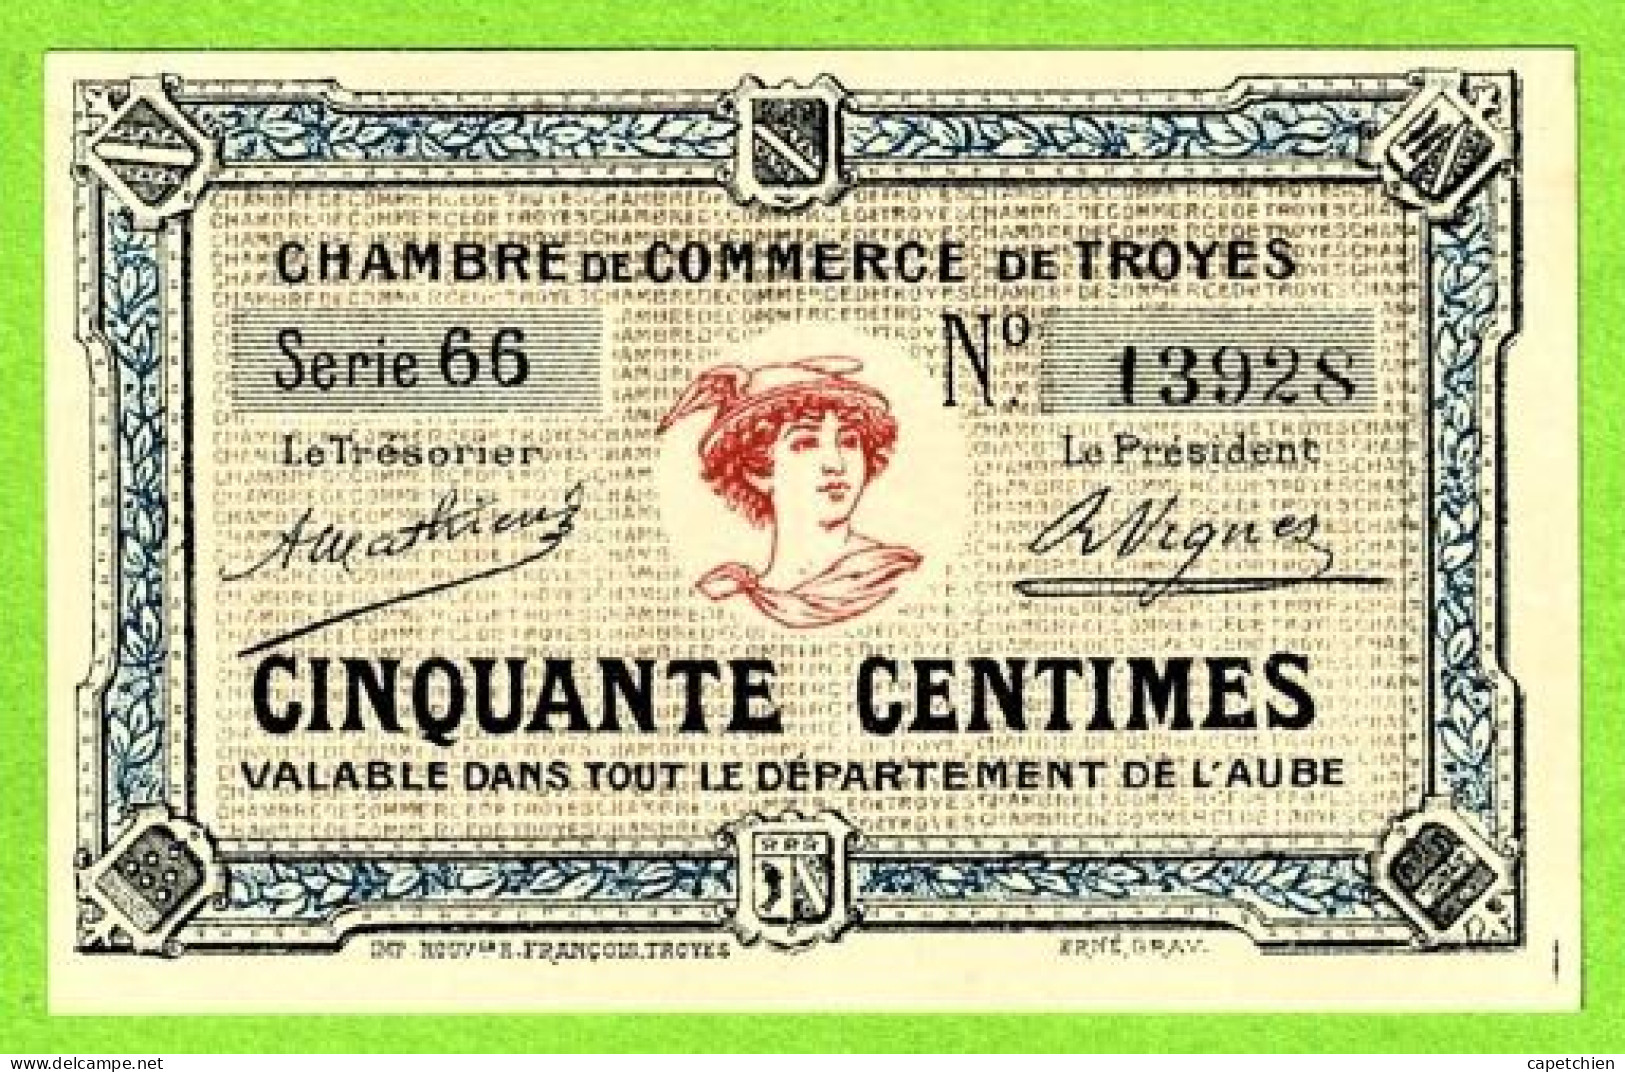 FRANCE / CHAMBRE De COMMERCE De TROYES/ 50 CENTIMES / 13928 /  SERIE 66 - Chambre De Commerce